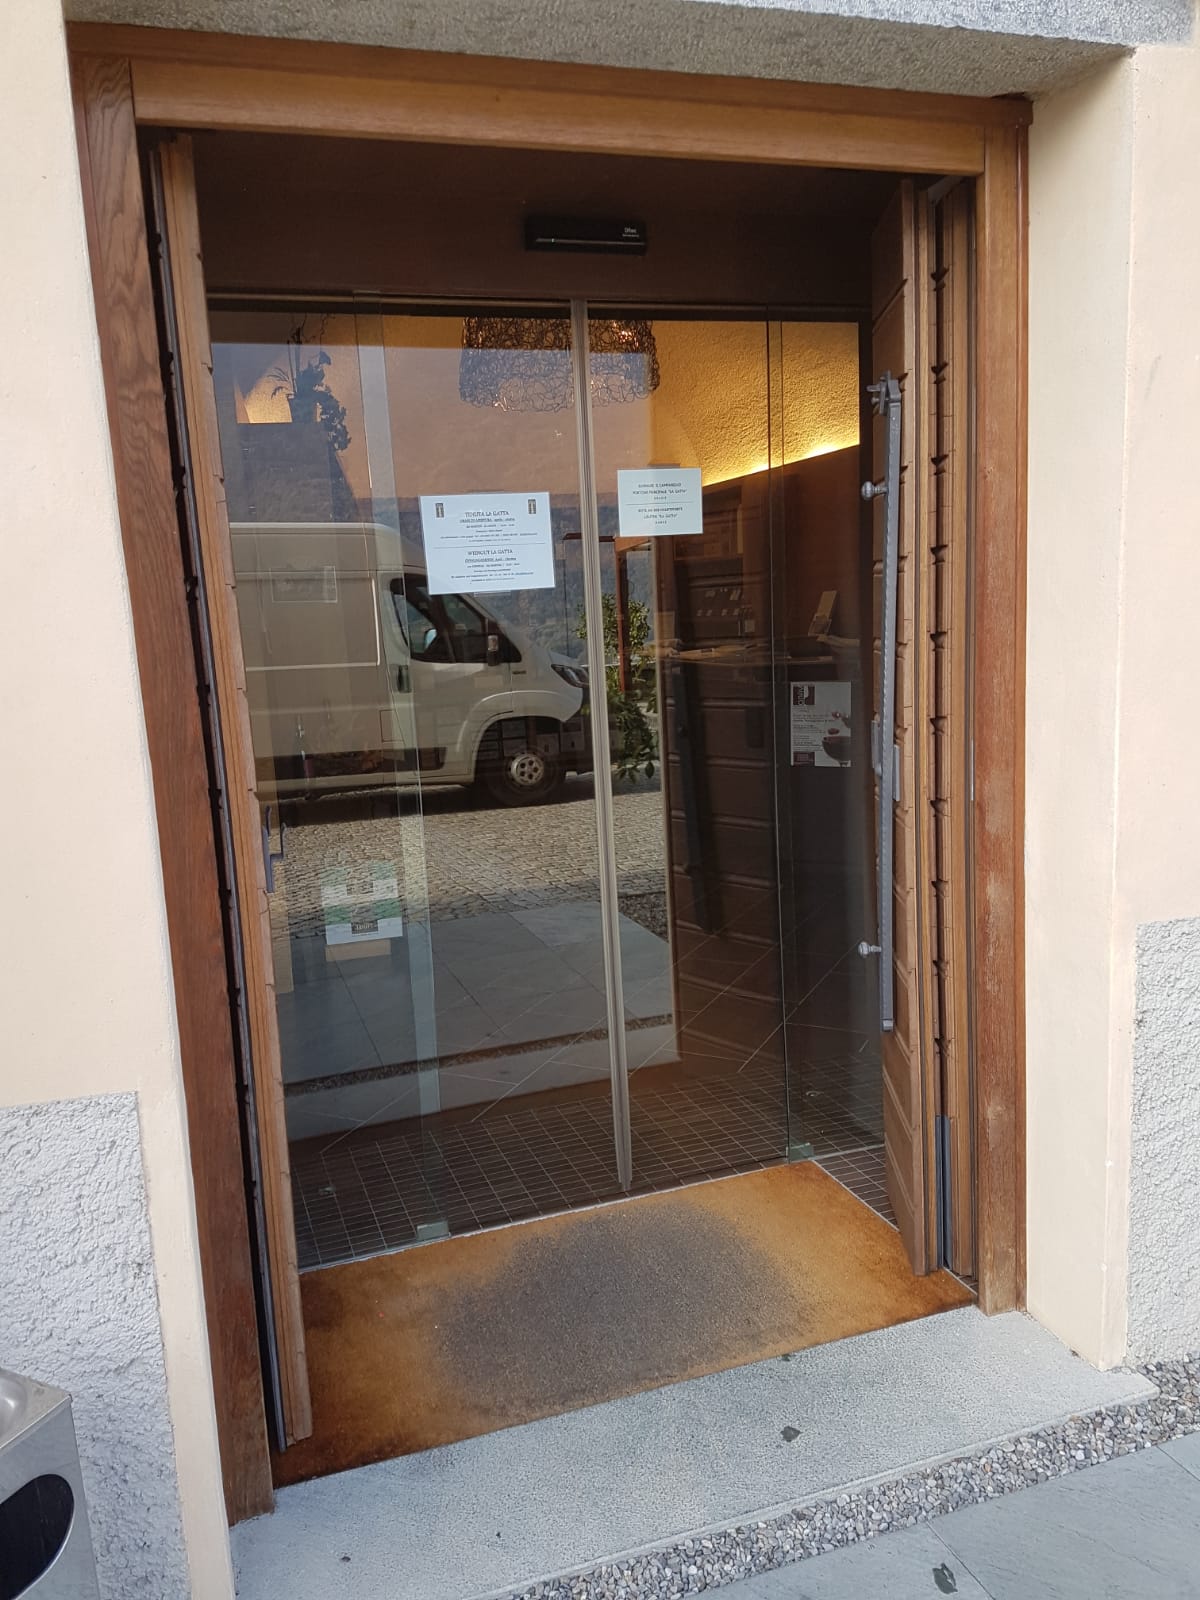 Nuova automazione DAS installata presso Casa Vinicola Triacca di Villa di Tirano: Immagine 1